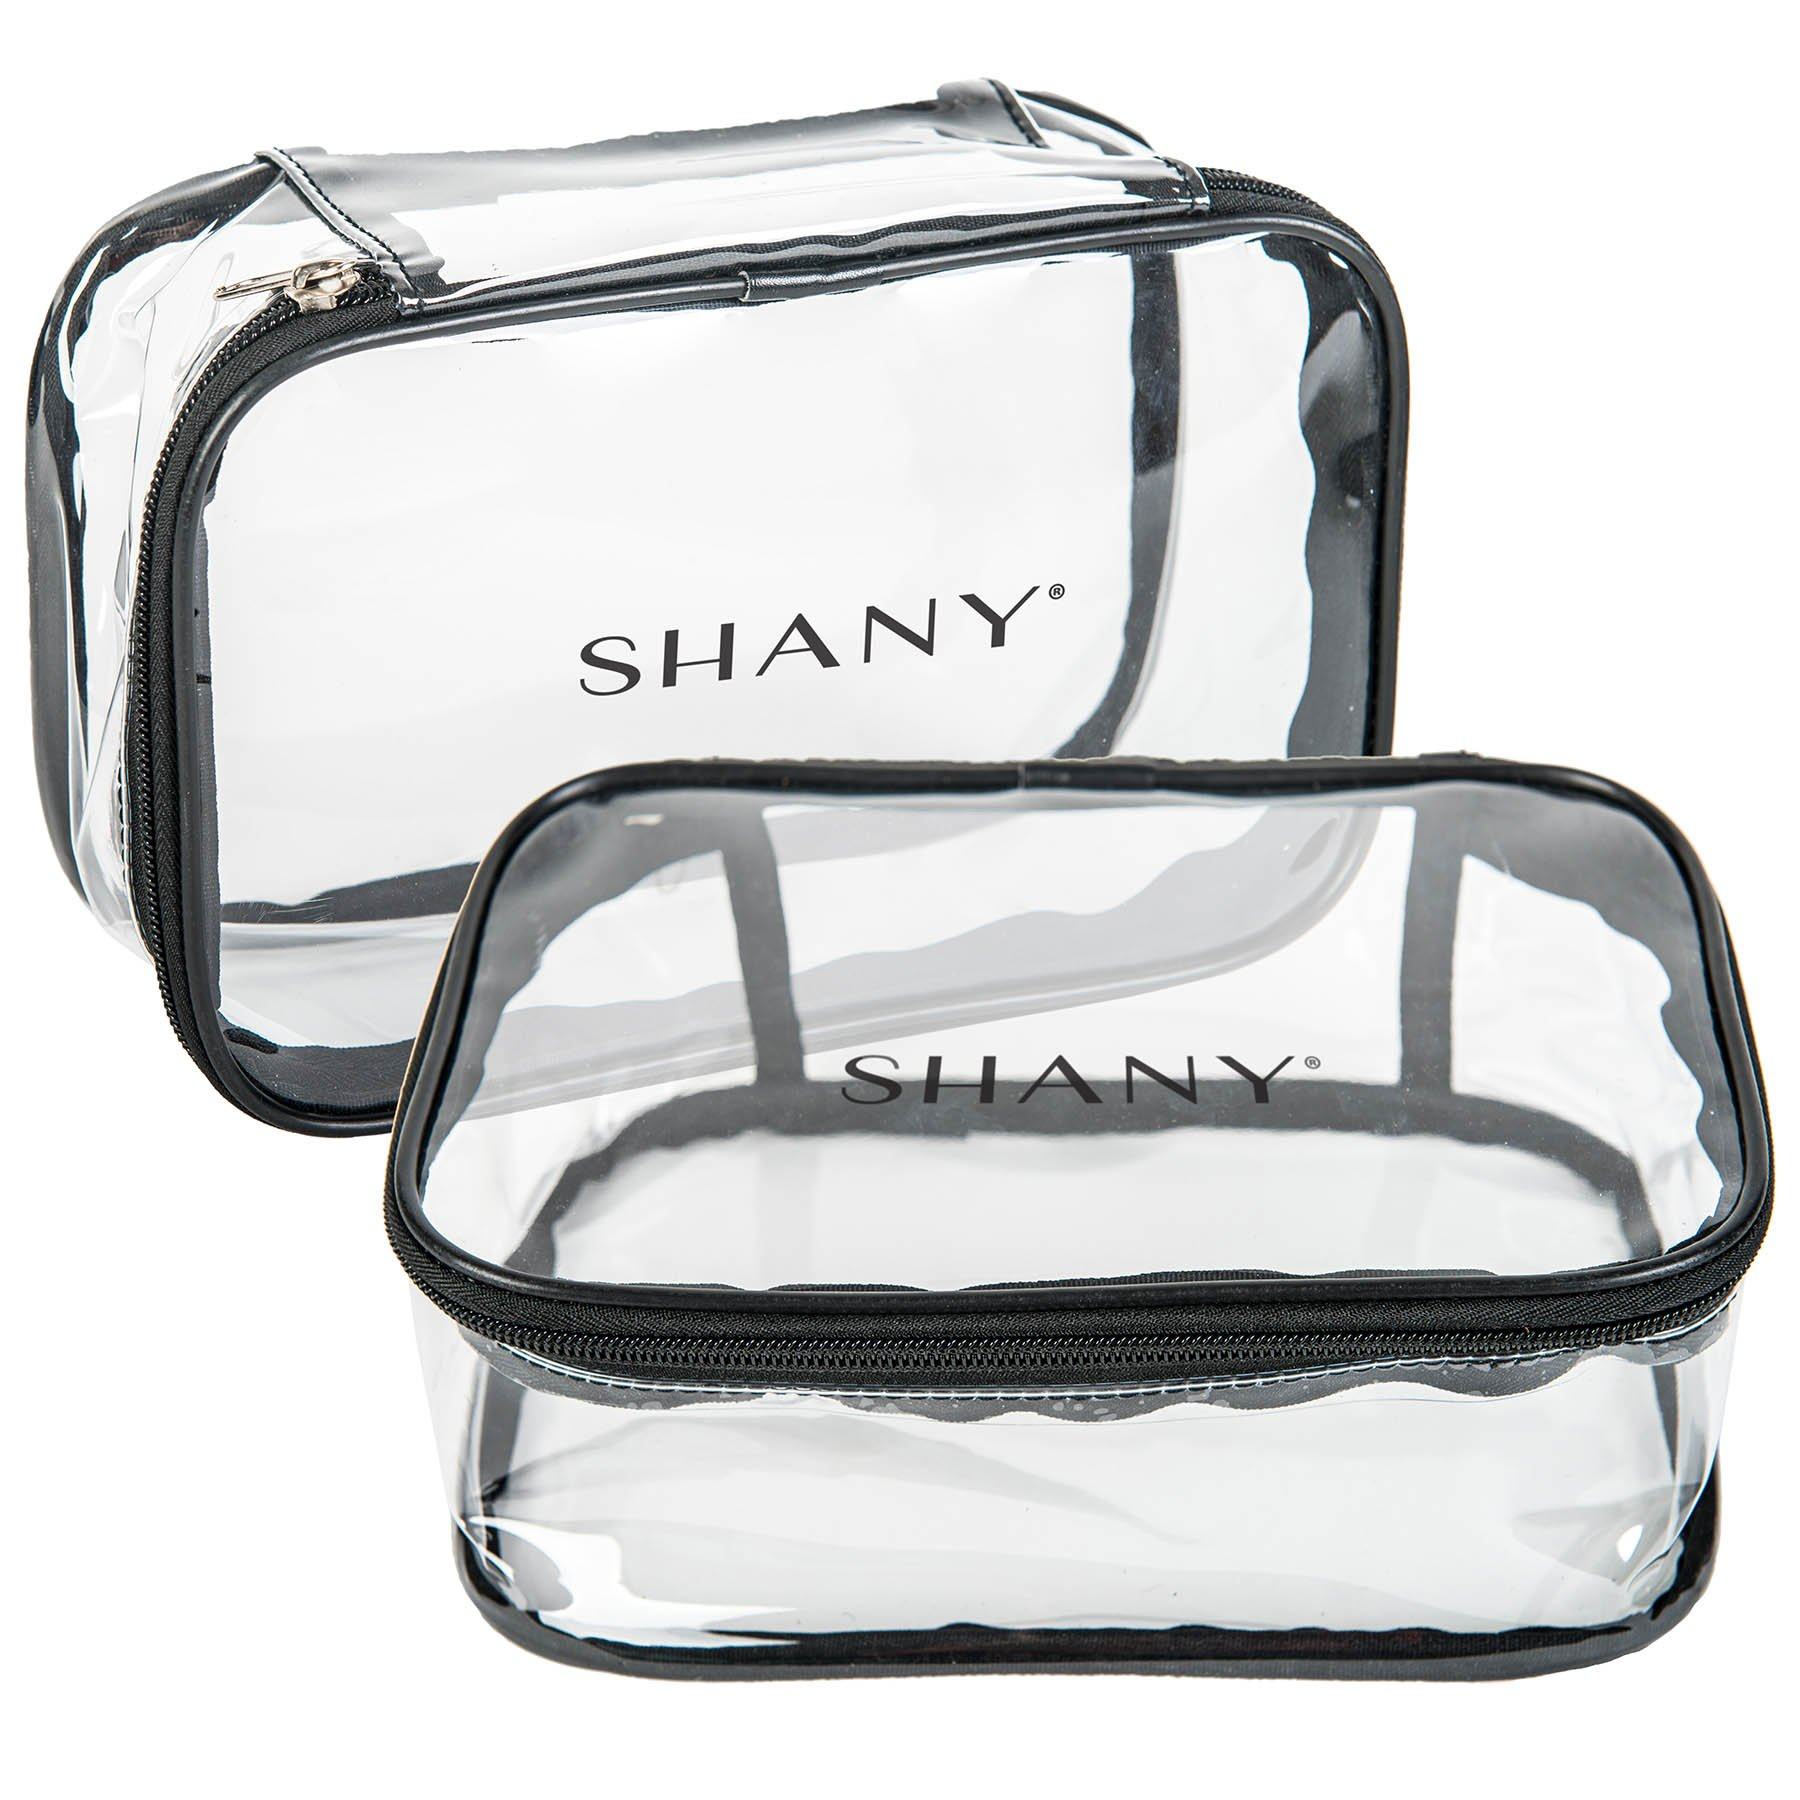 Shany Clear Makeup Bag, Pro Mua Rectangular Bag with Shoulder Strap, Large